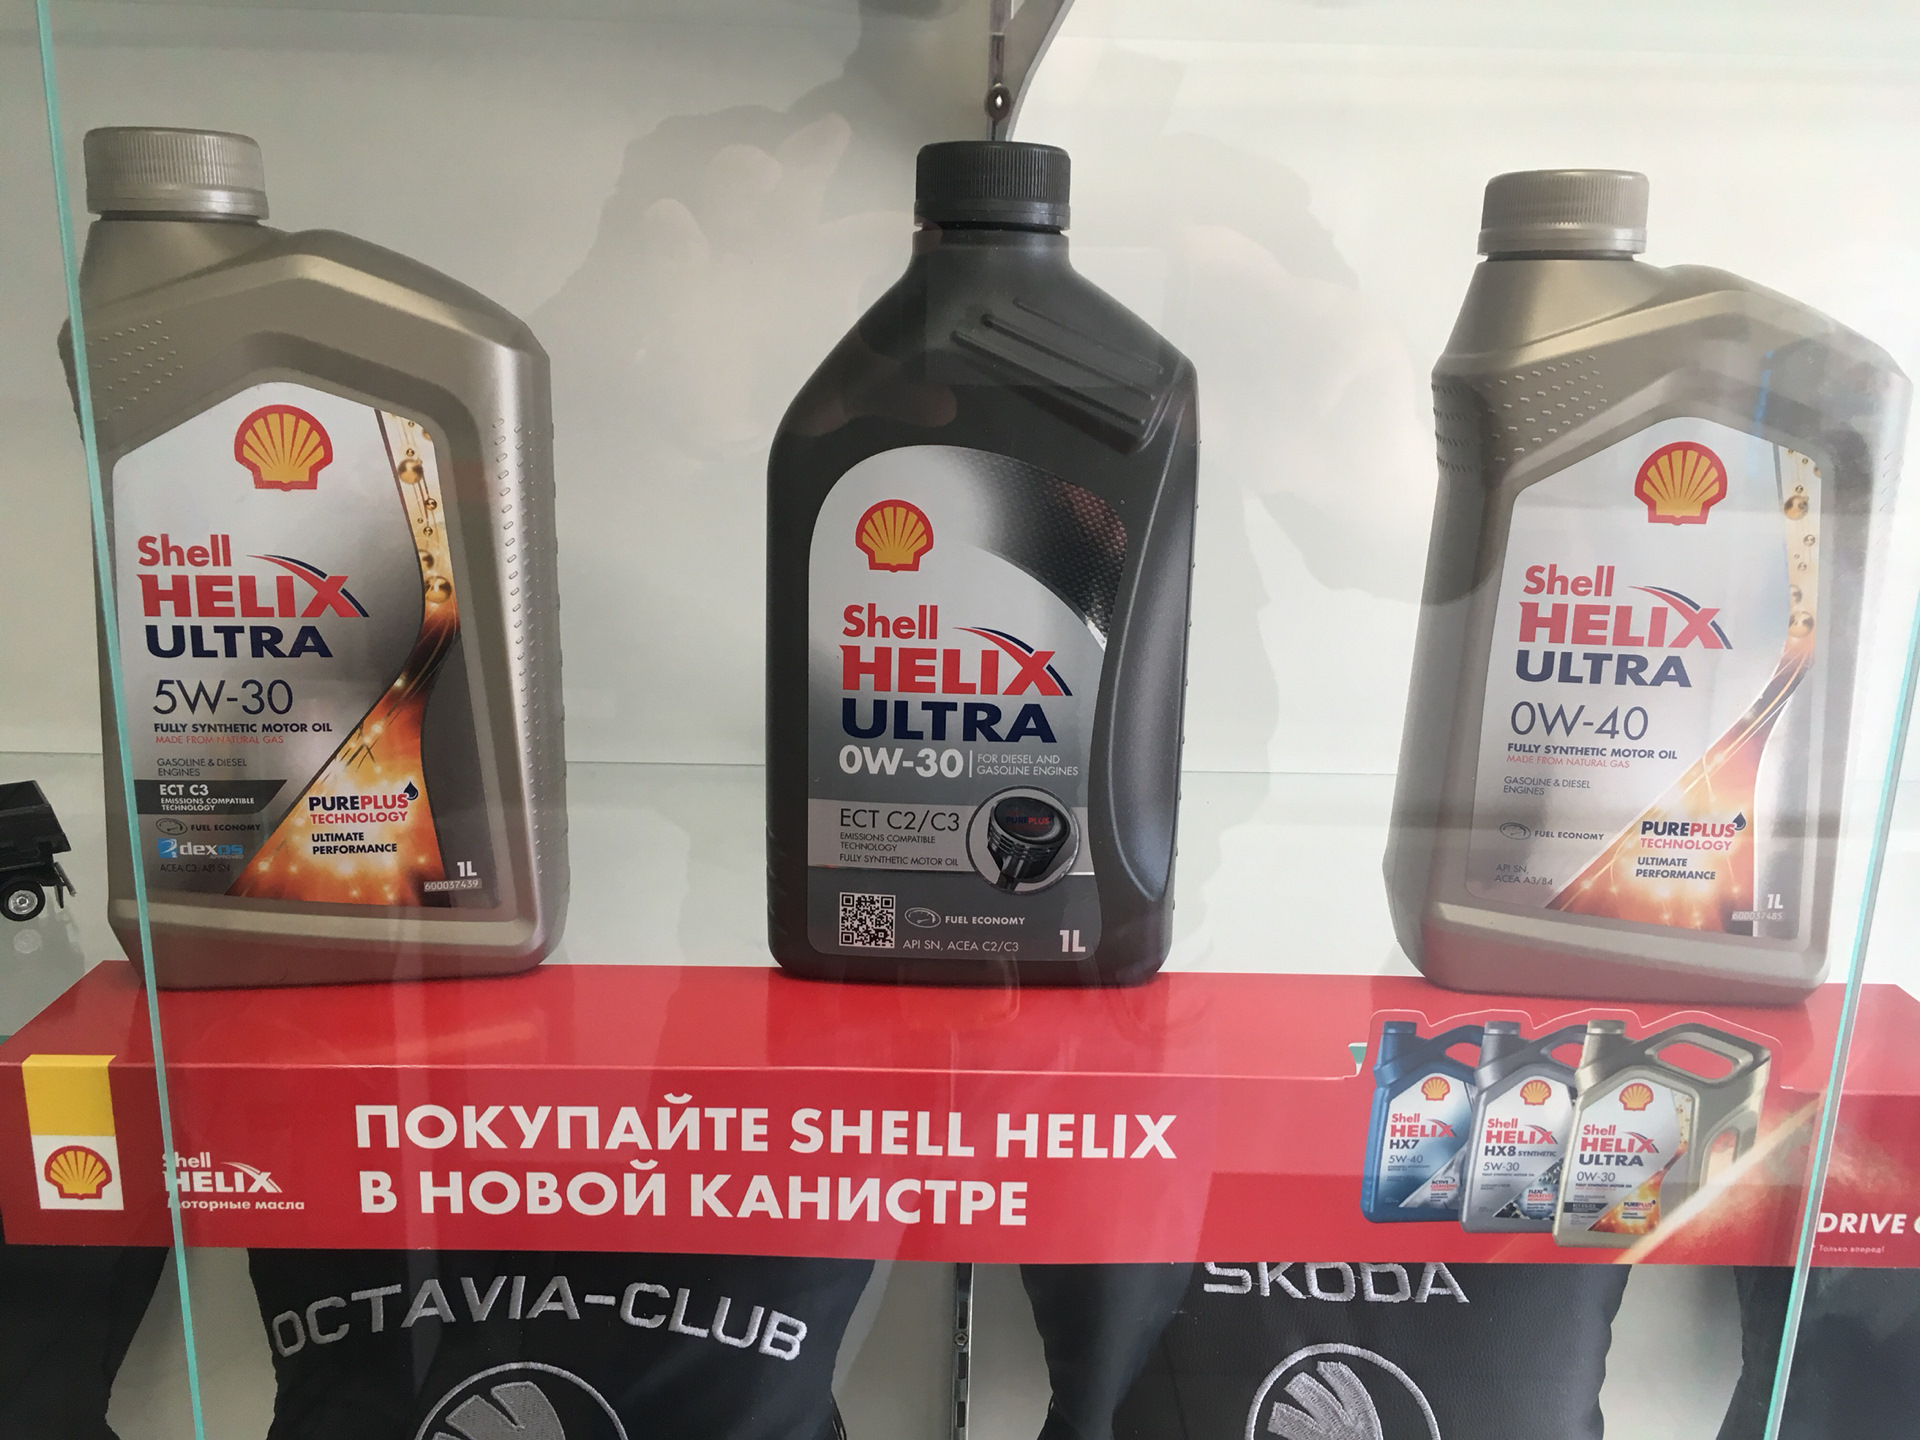 Shell av l. Сертификат Shell Ultra. Оригинальное масло Шелл 2024. Сертификат Шелл Хеликс ультра. Масло Шелл сертификат качества.